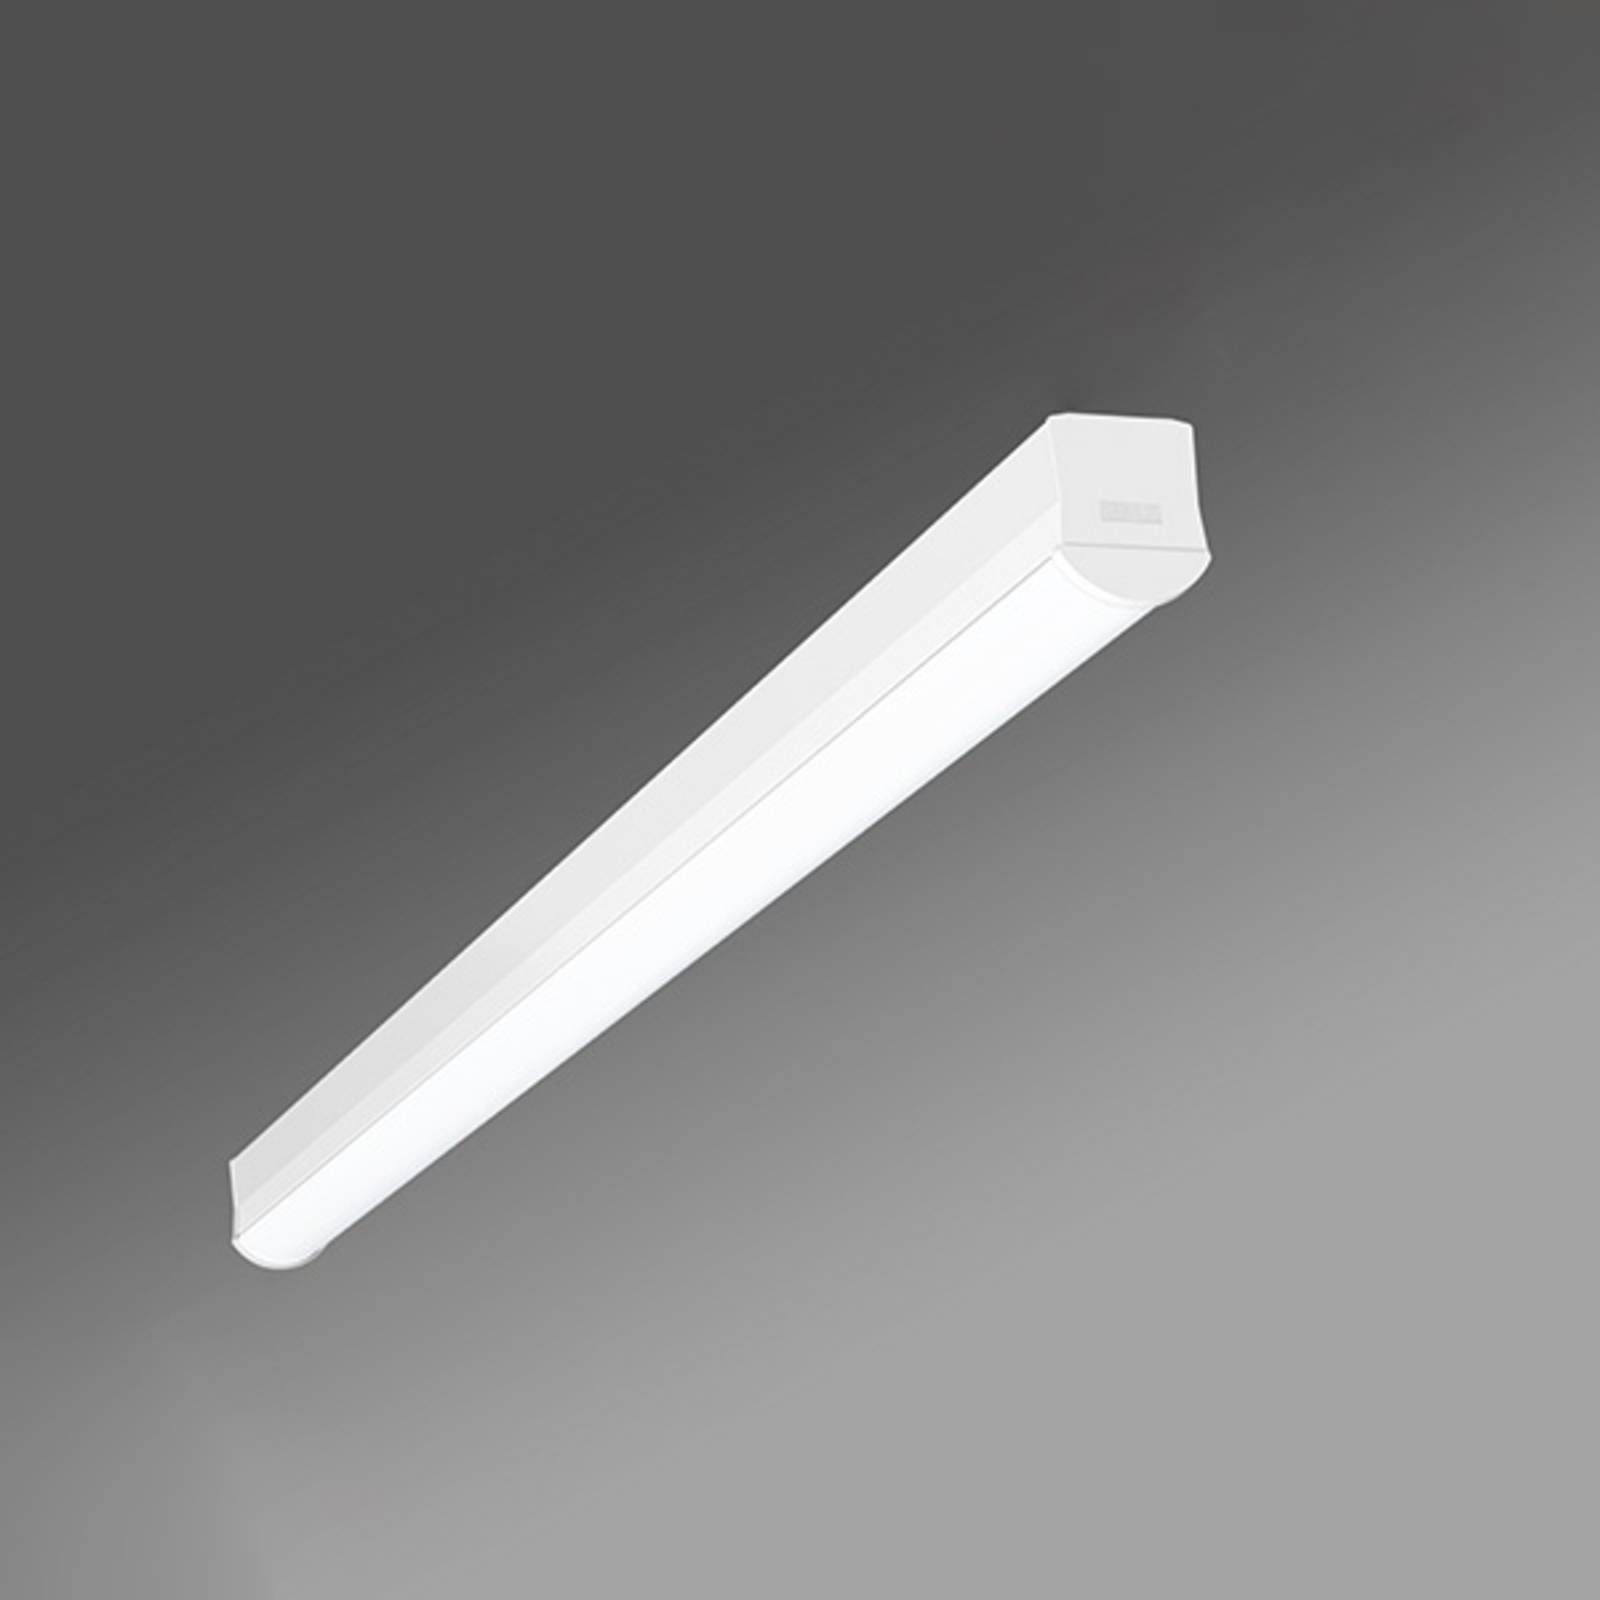 Regiolux Dlhé stropné LED svietidlo Ilia-ILG/1200 4 000 K, Chodba, oceľ, plast, 36W, P: 114 cm, L: 5.6 cm, K: 6.6cm